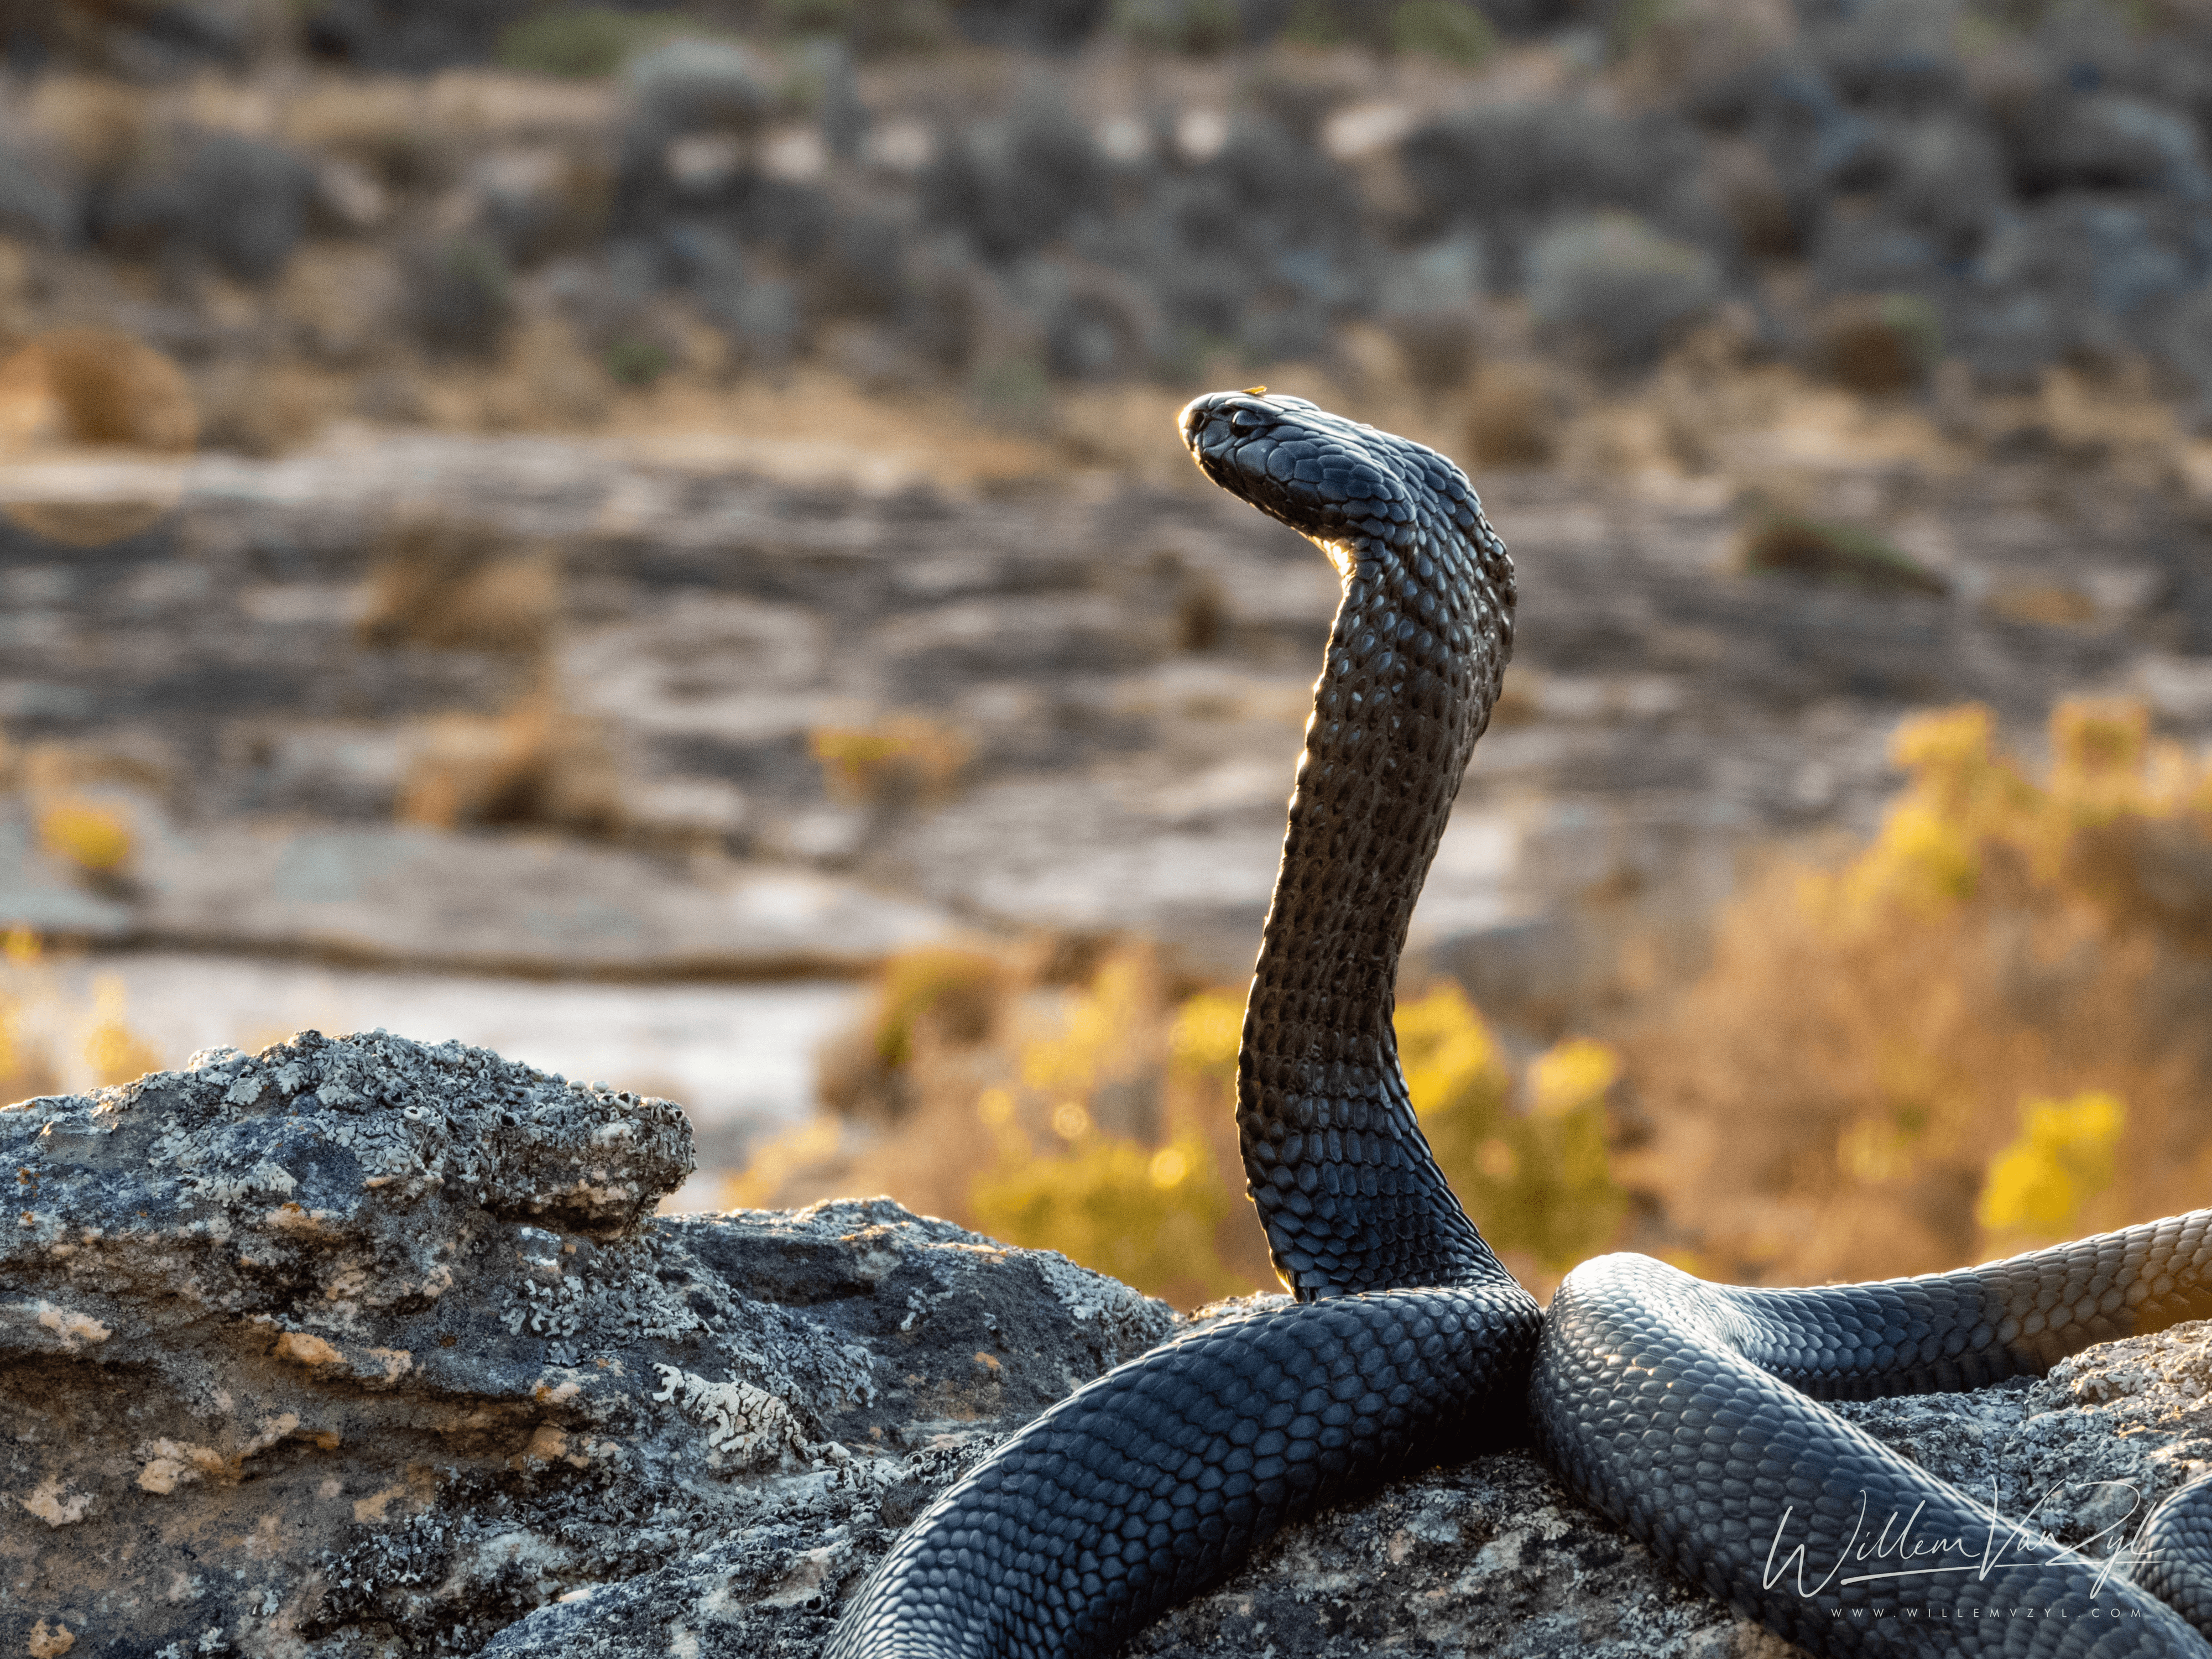 Black Spitting Cobra (Naja nigricincta woodi)